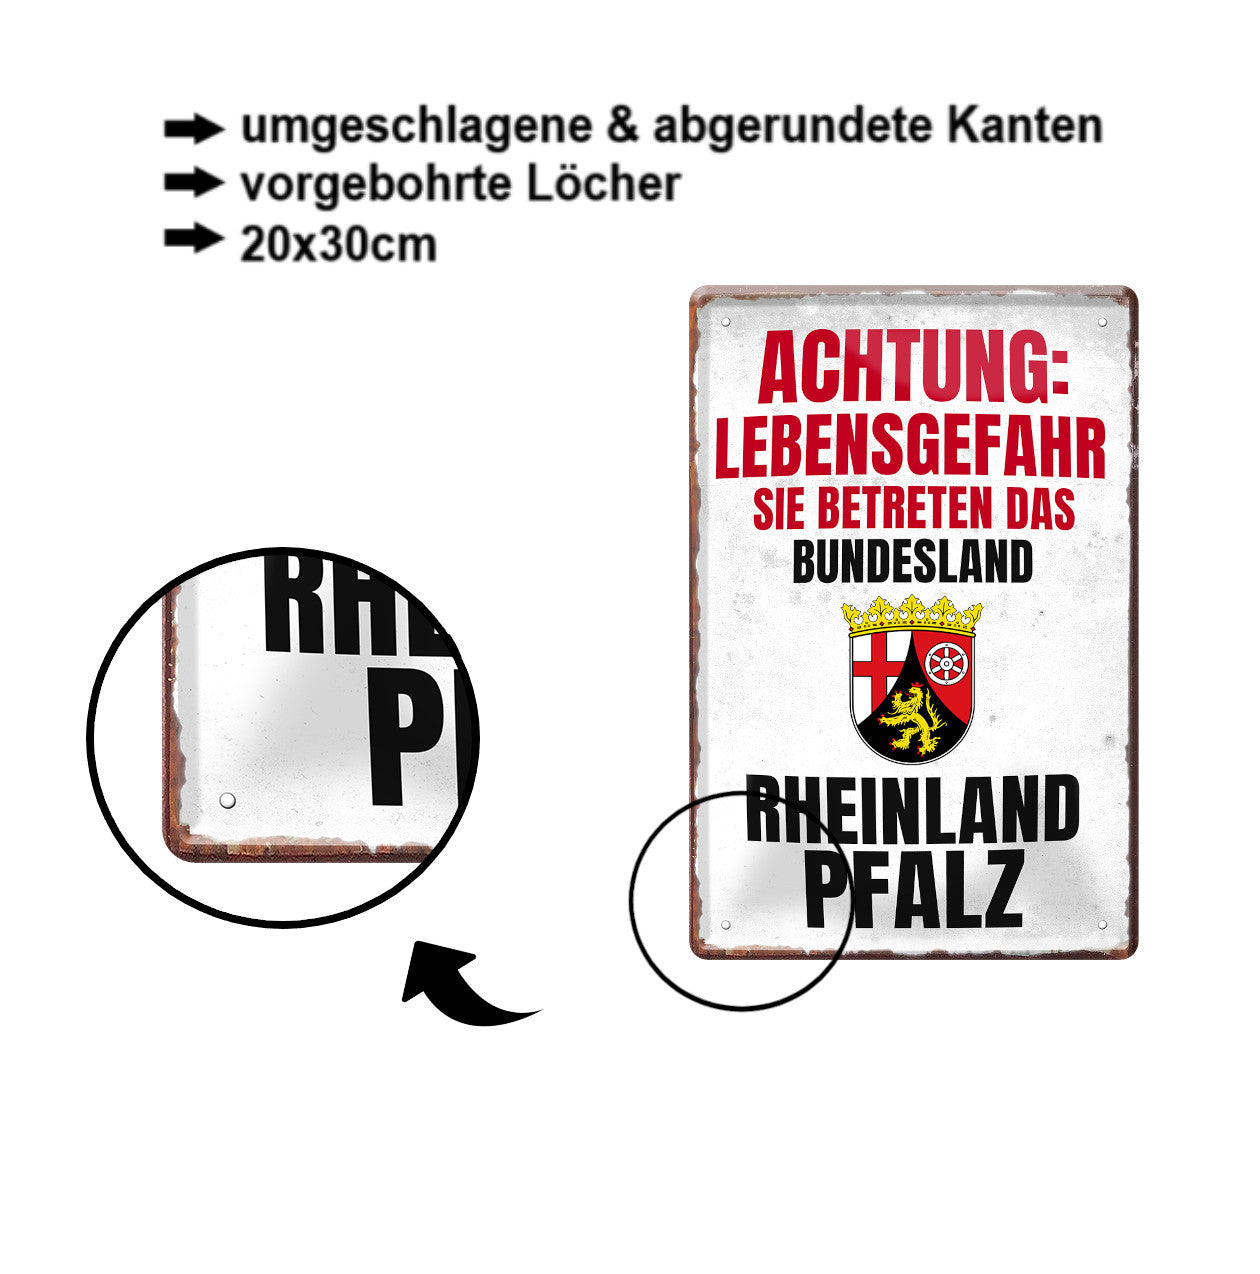 Blechschild ''Achtung Lebensgefahr Rheinland Pfalz'' 20x30cm